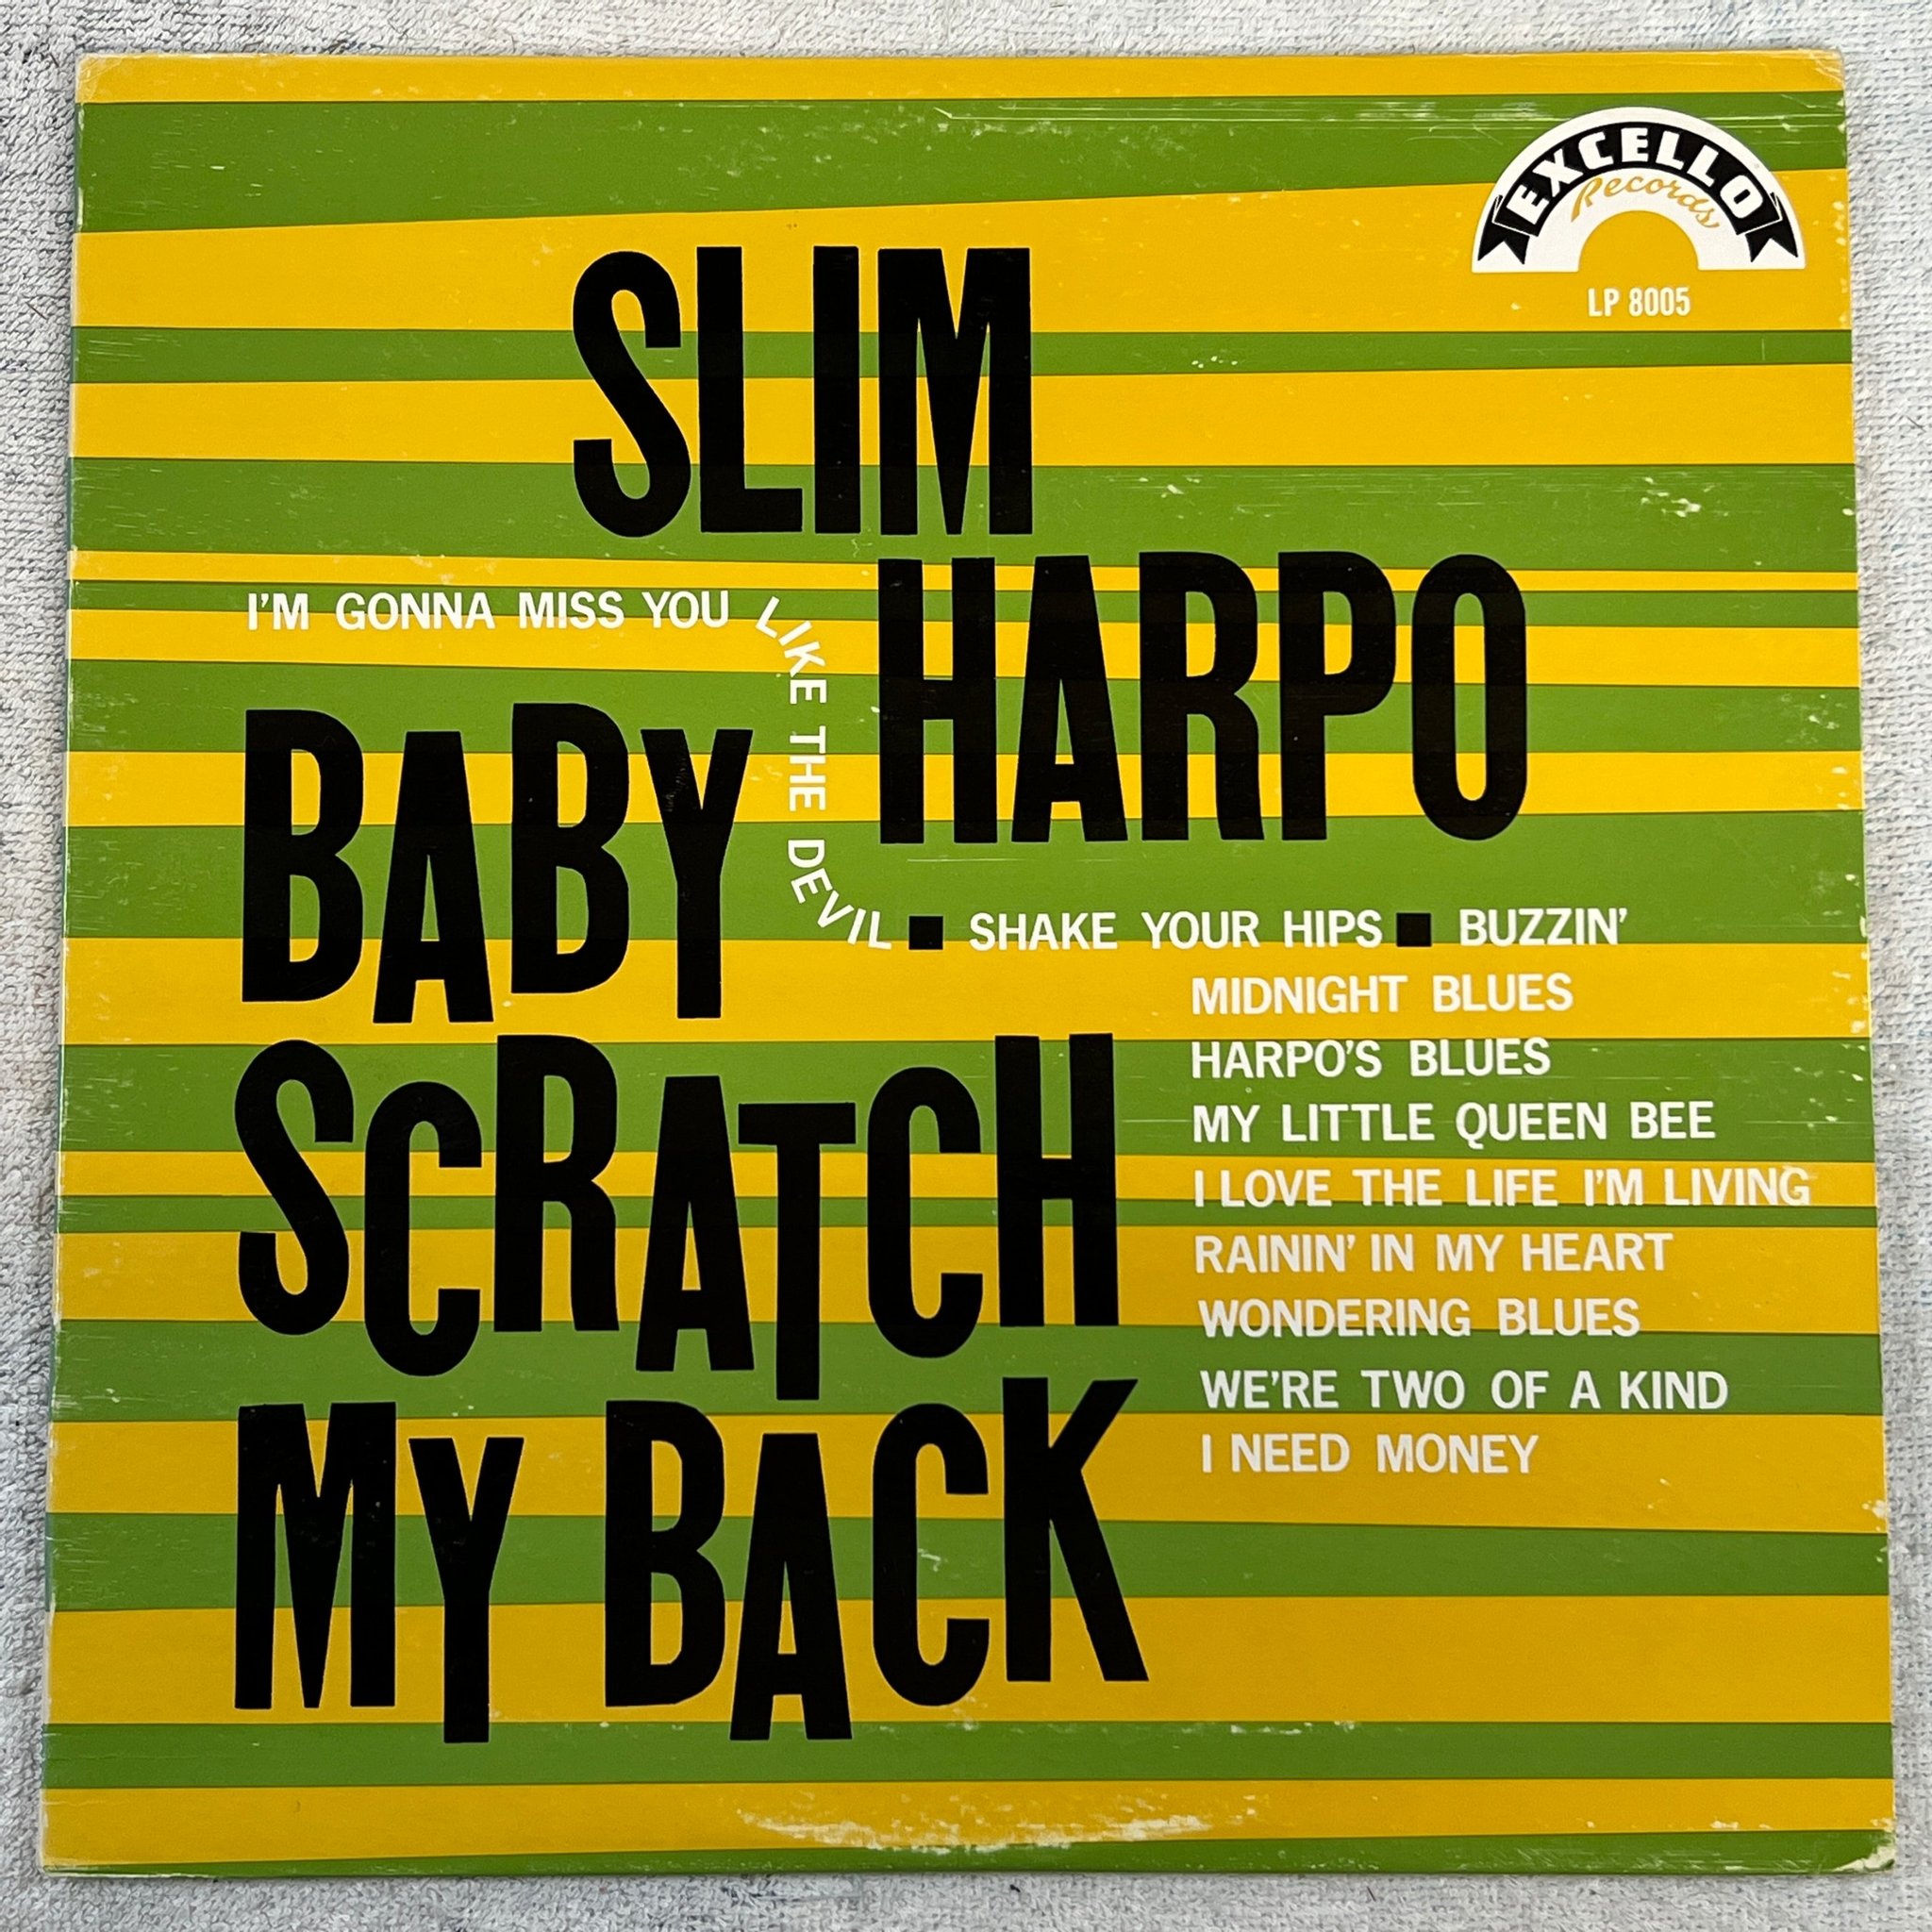 Omslagsbild för skivan SLIM HARPO baby scratch my back LP -66 US EXCELLO LP-8005 rare original 